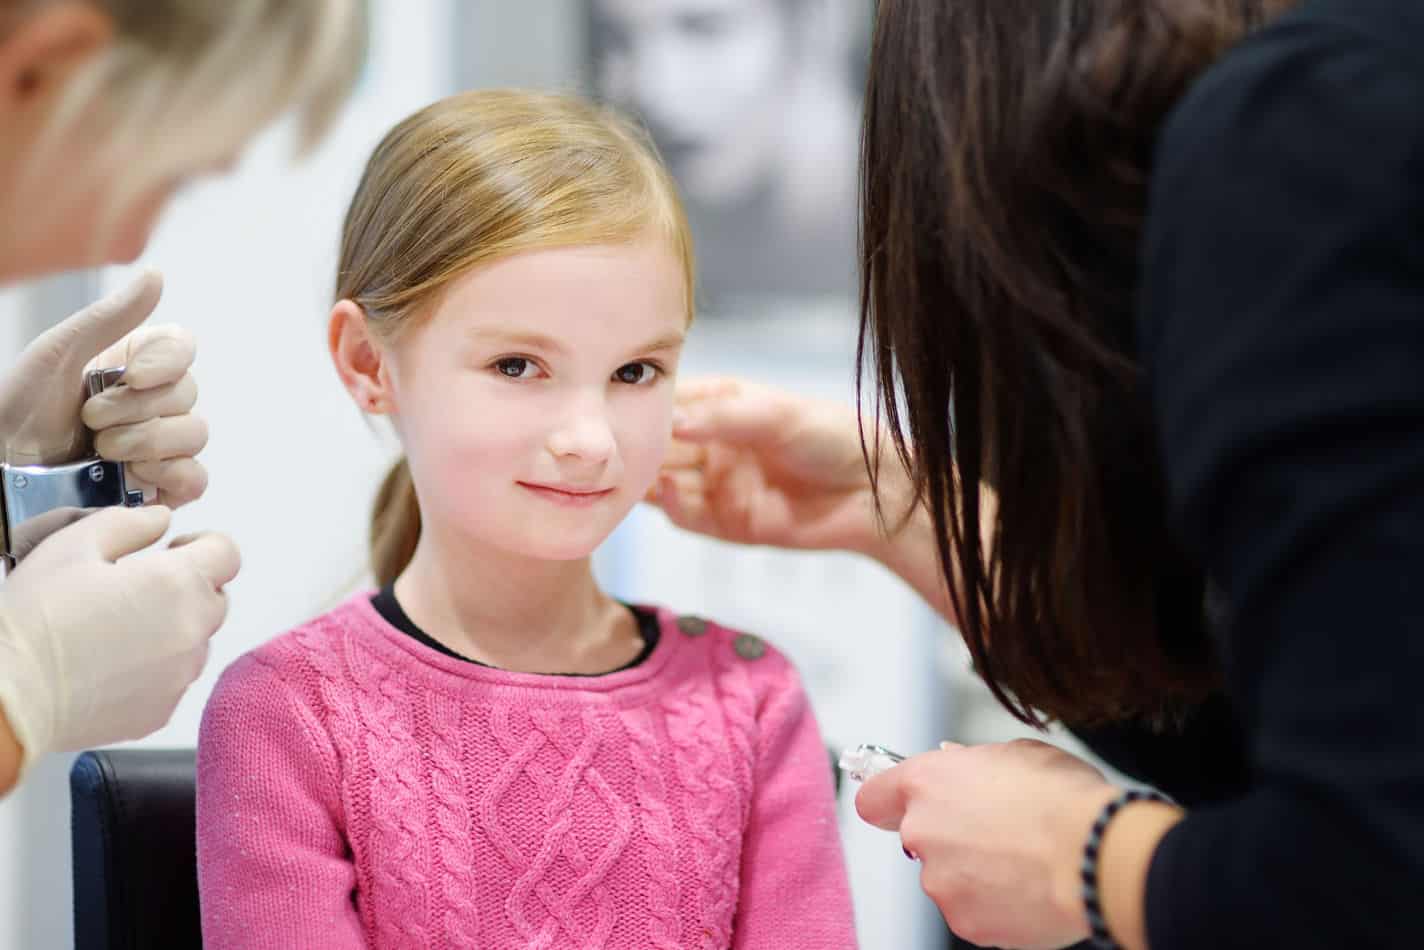 ¿Debería perforarse las orejas una niña de 7 años?